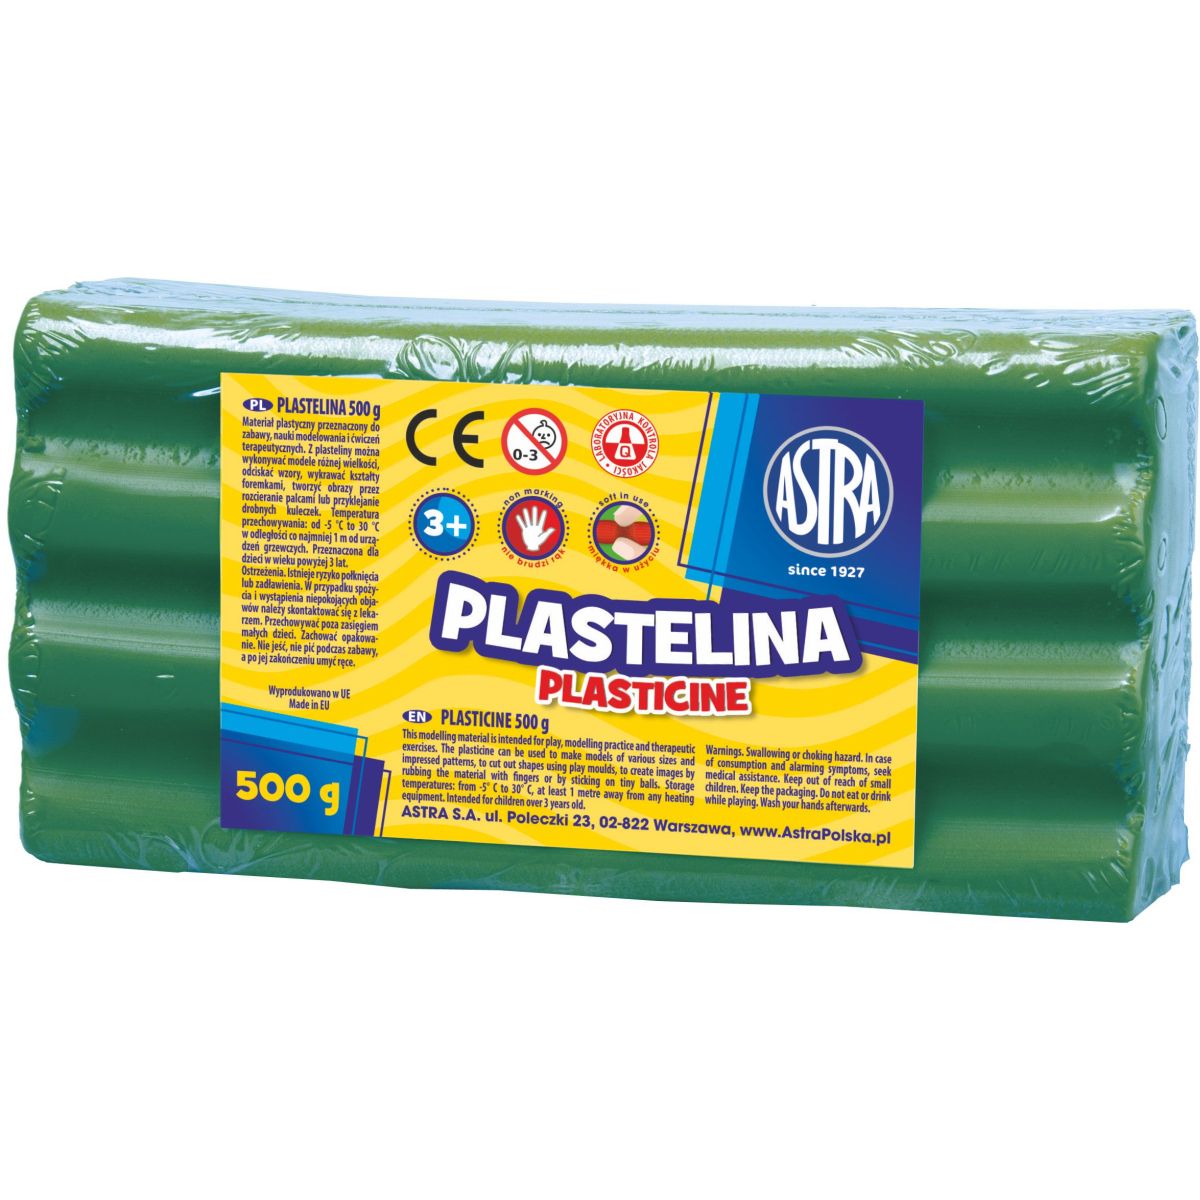 Plastelina Astra 1 kol. zielona 500g